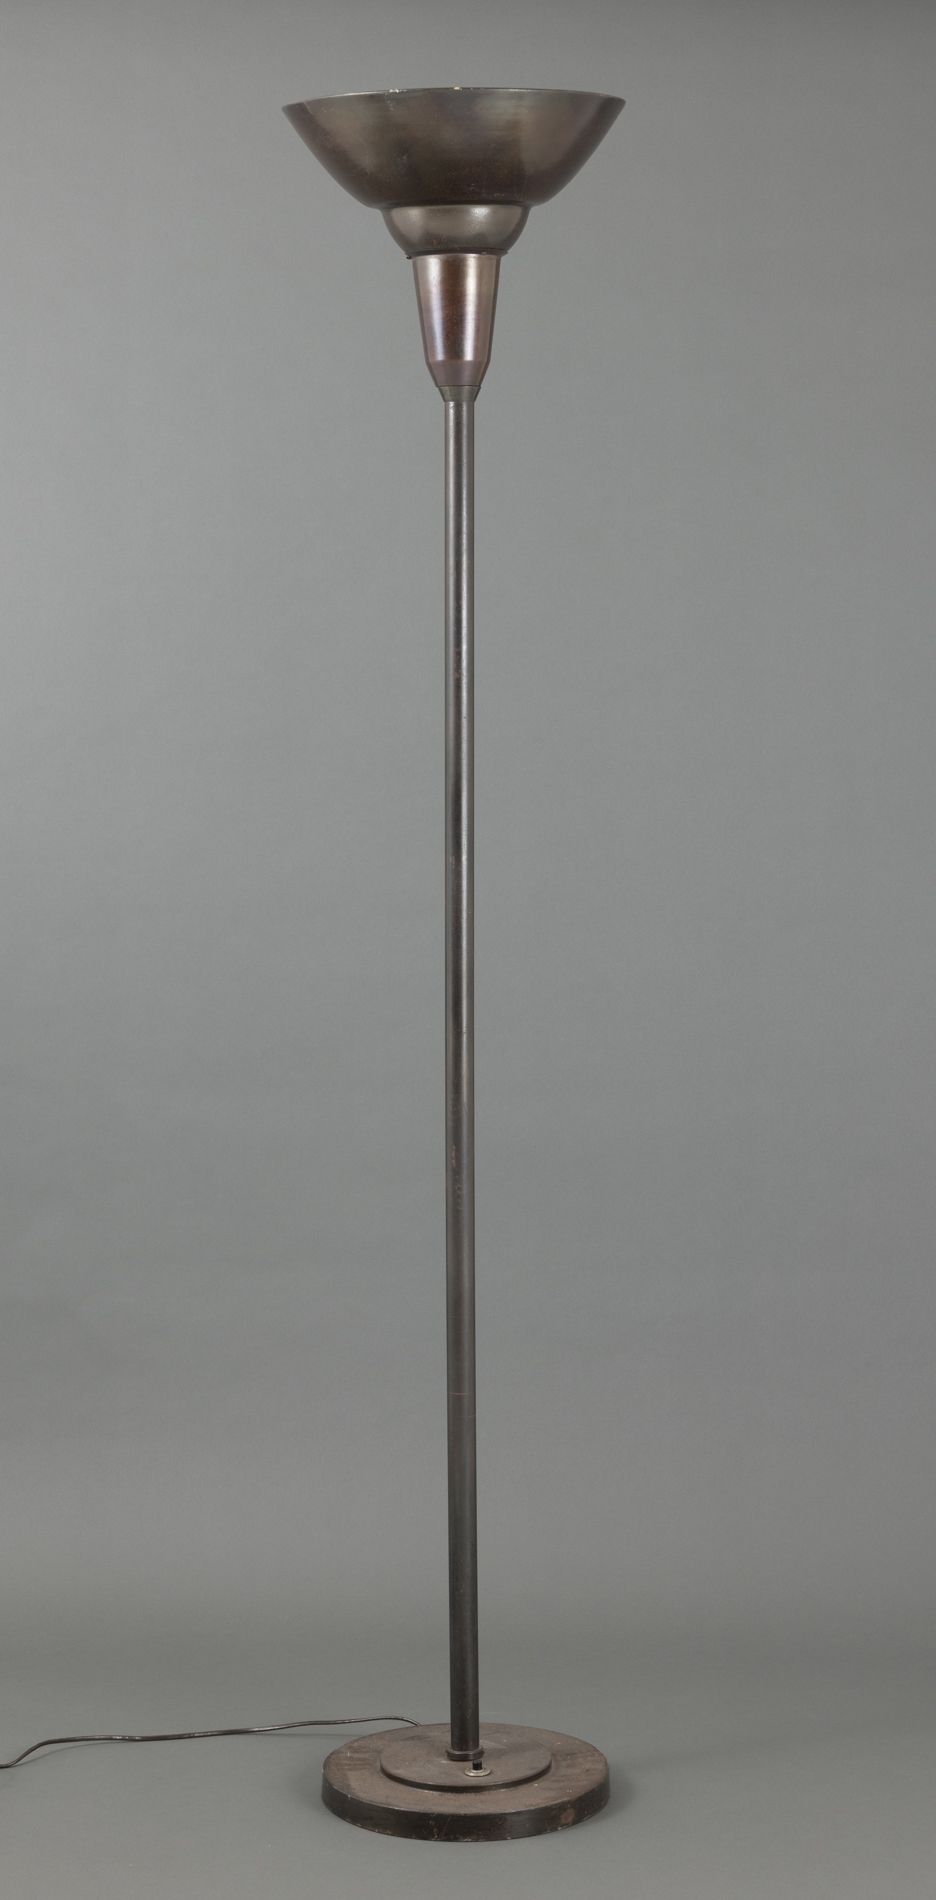 Null 古铜色漆面金属落地灯。 
制造于1940年代。 
H.175厘米